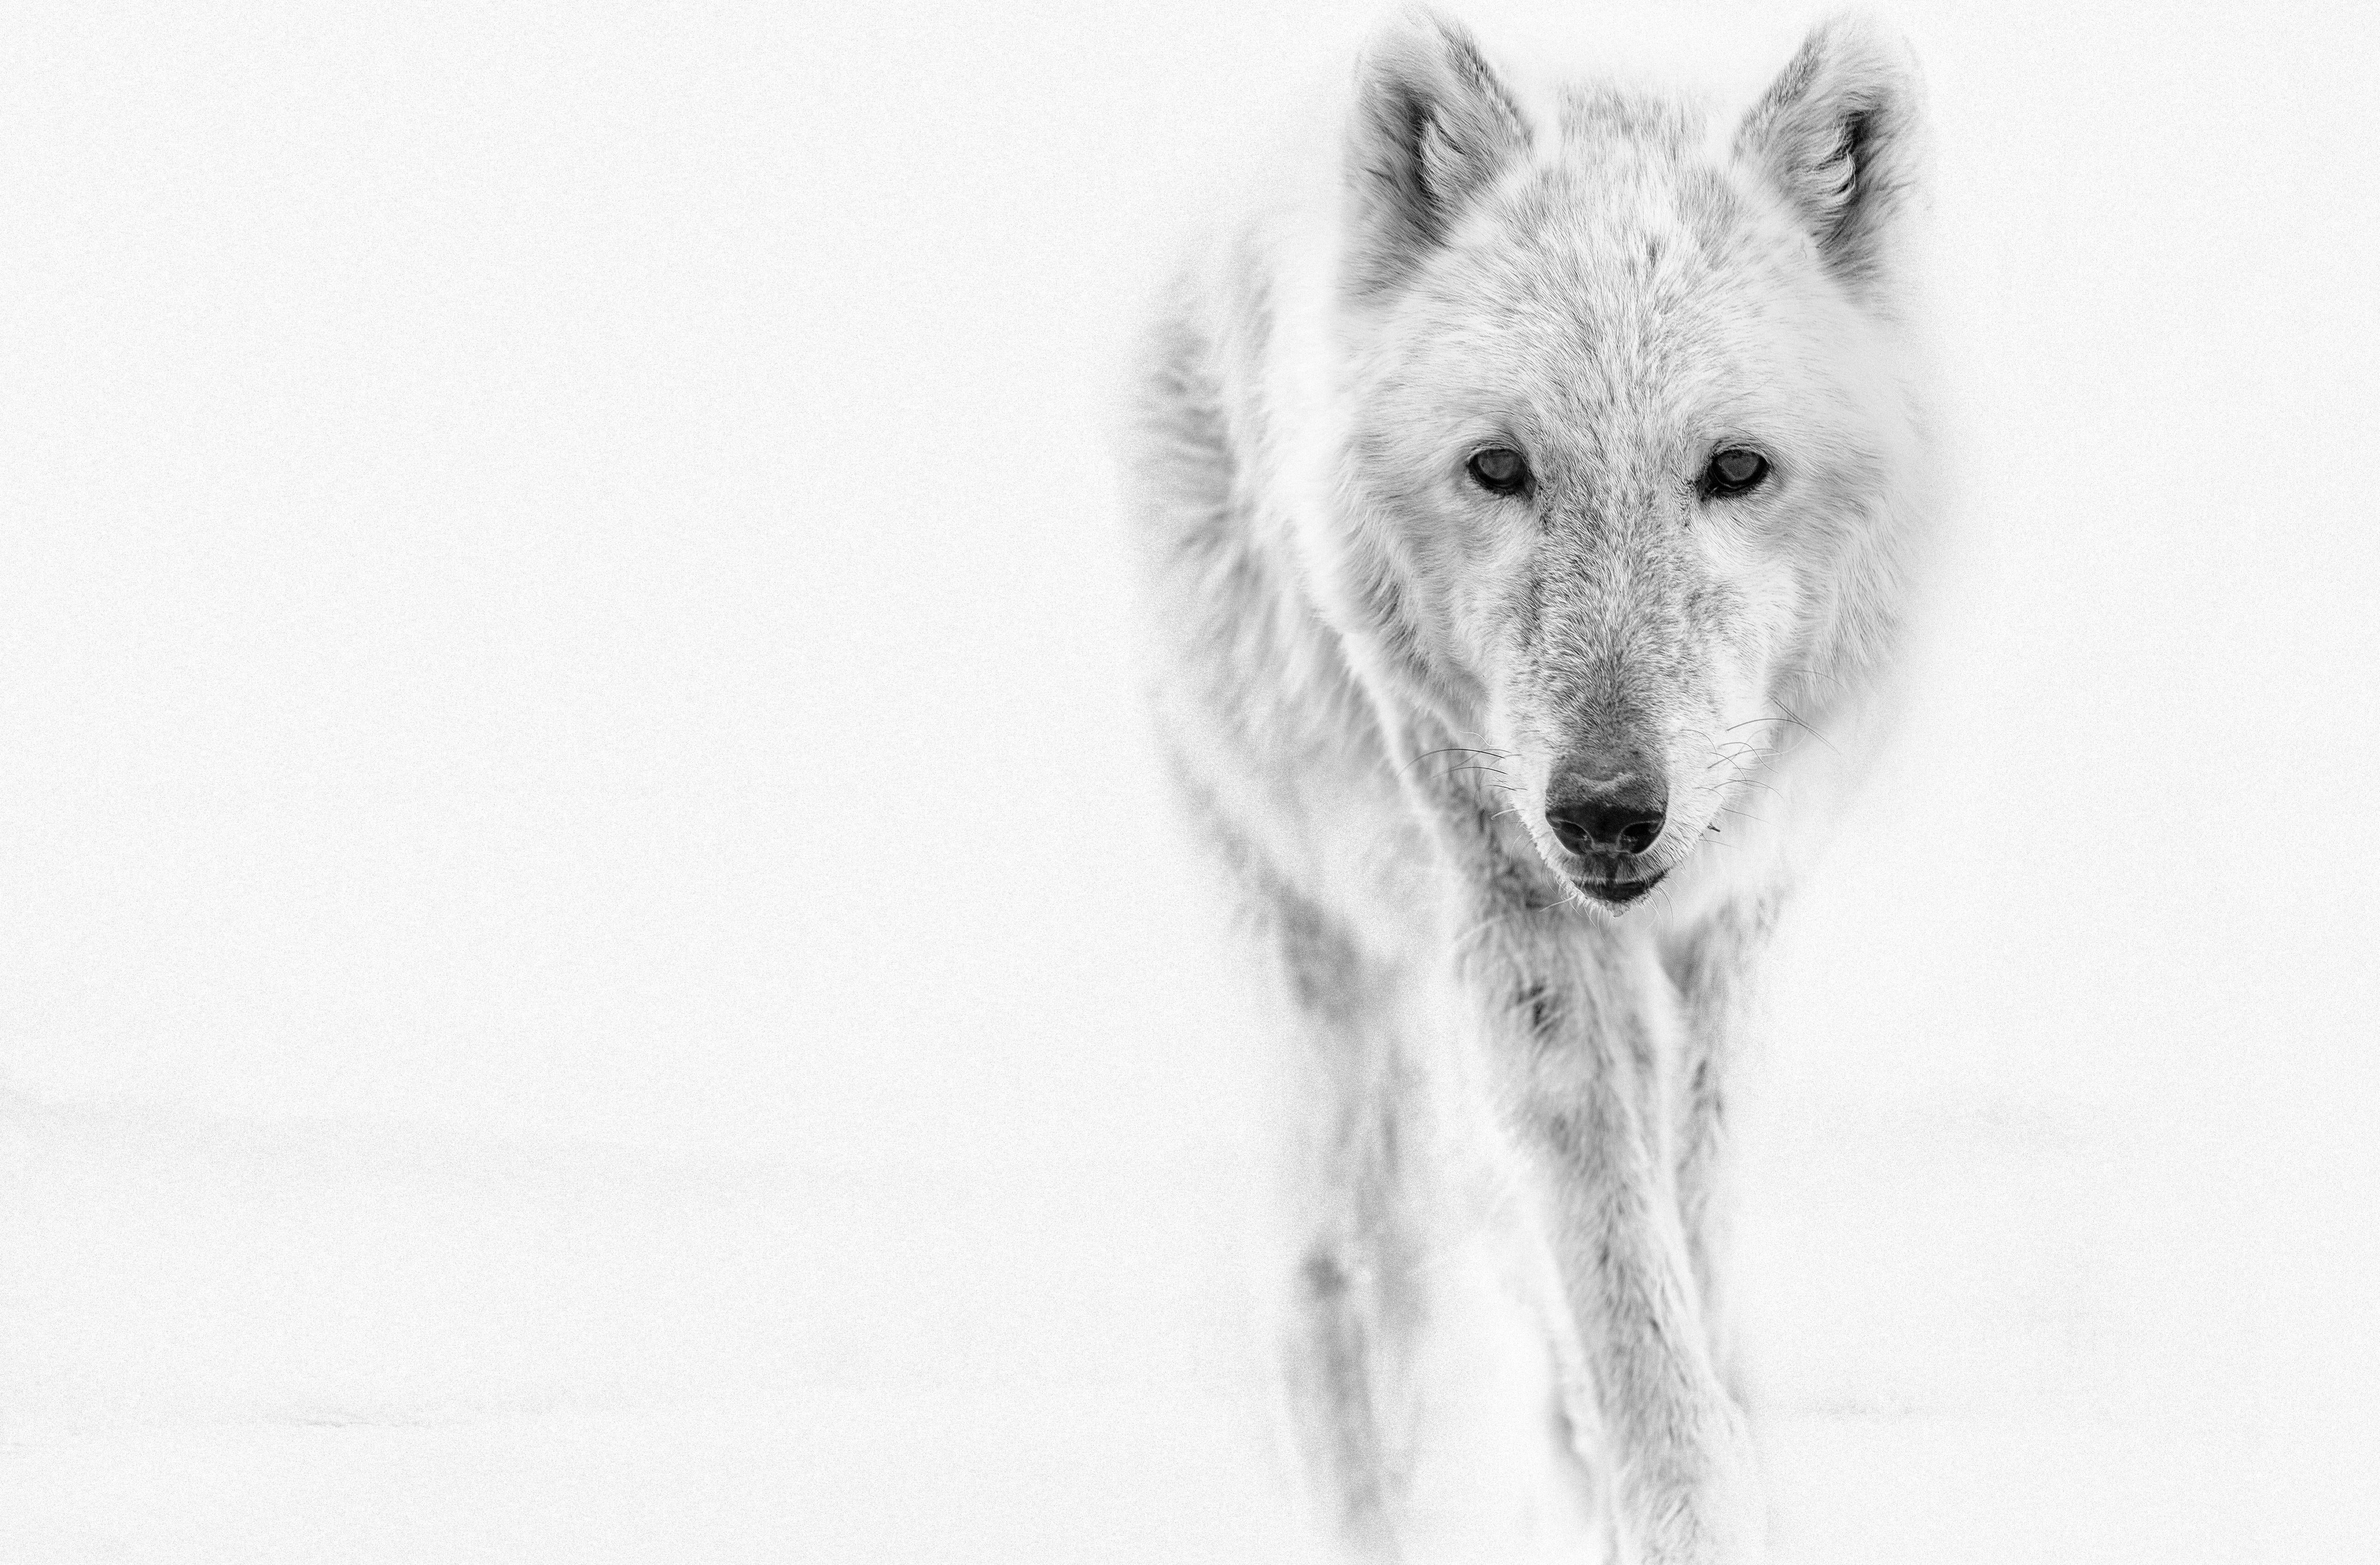 Black and White Photograph Shane Russeck - Le loup arctique 40x60  Photographie en noir et blanc, Photographie de loups Tirage non signé